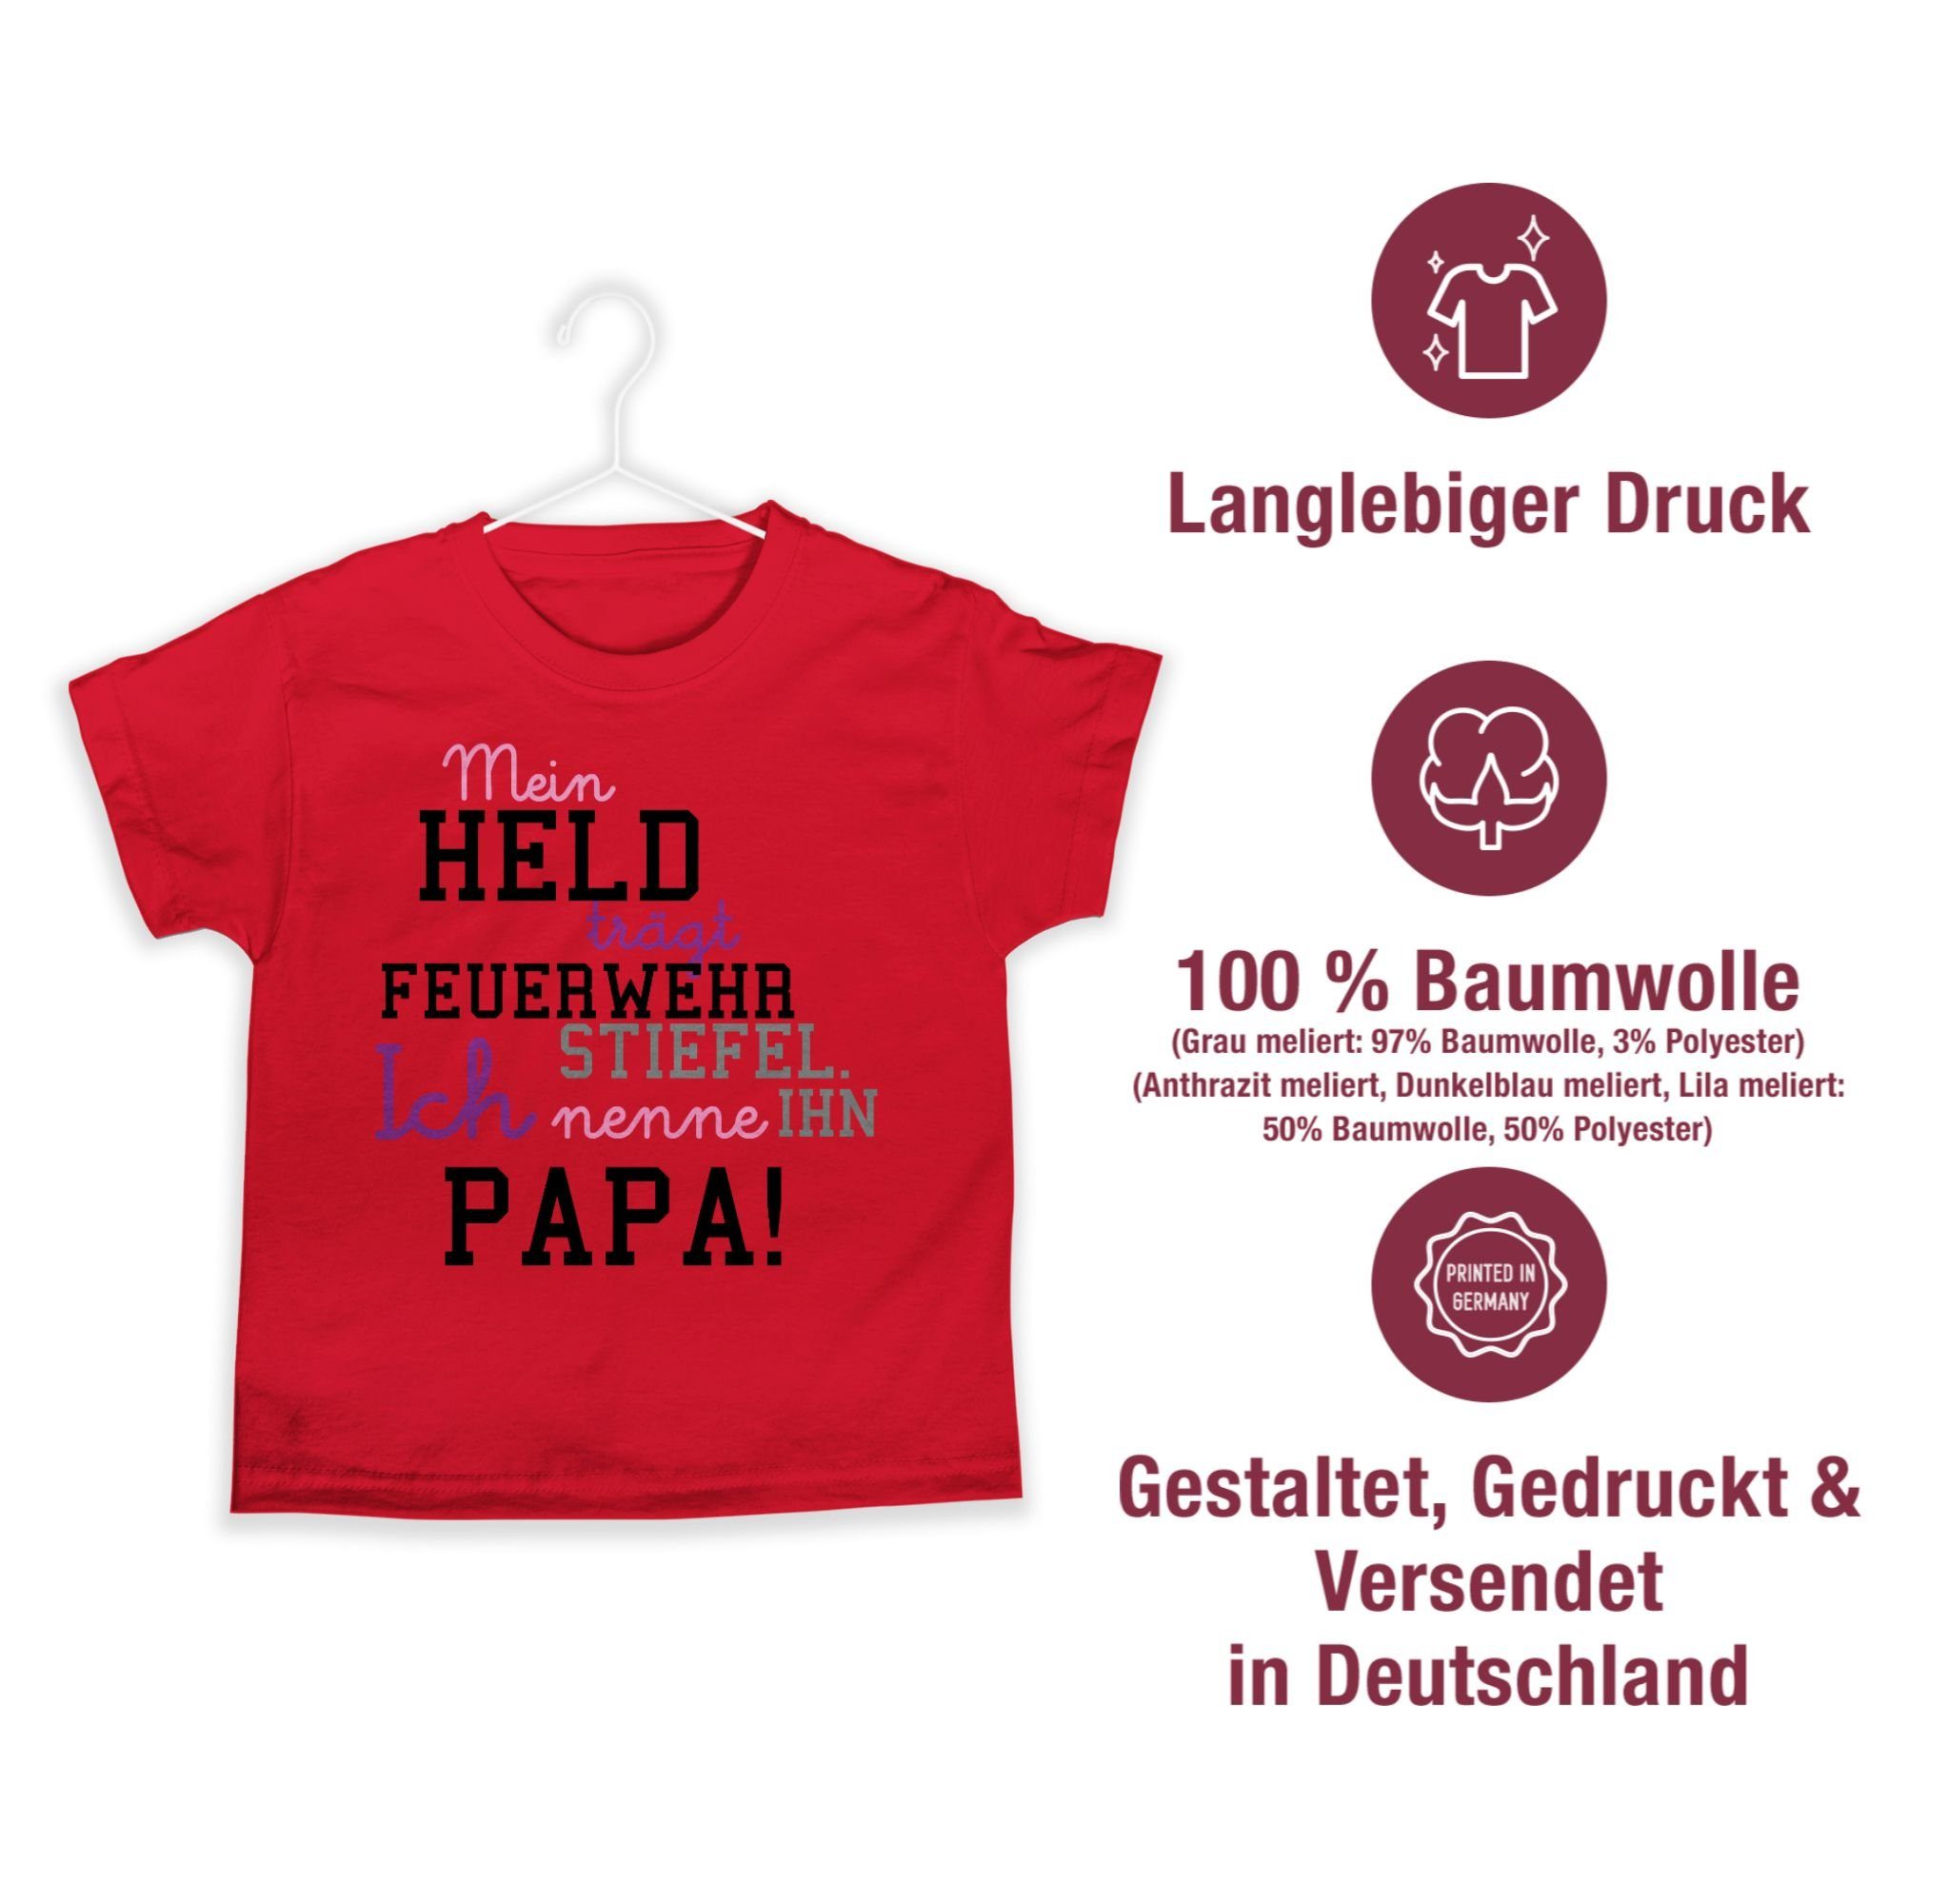 Feuerwehrmann Feuerwehr Shirtracer Held Papa T-Shirt Rot Mein 1